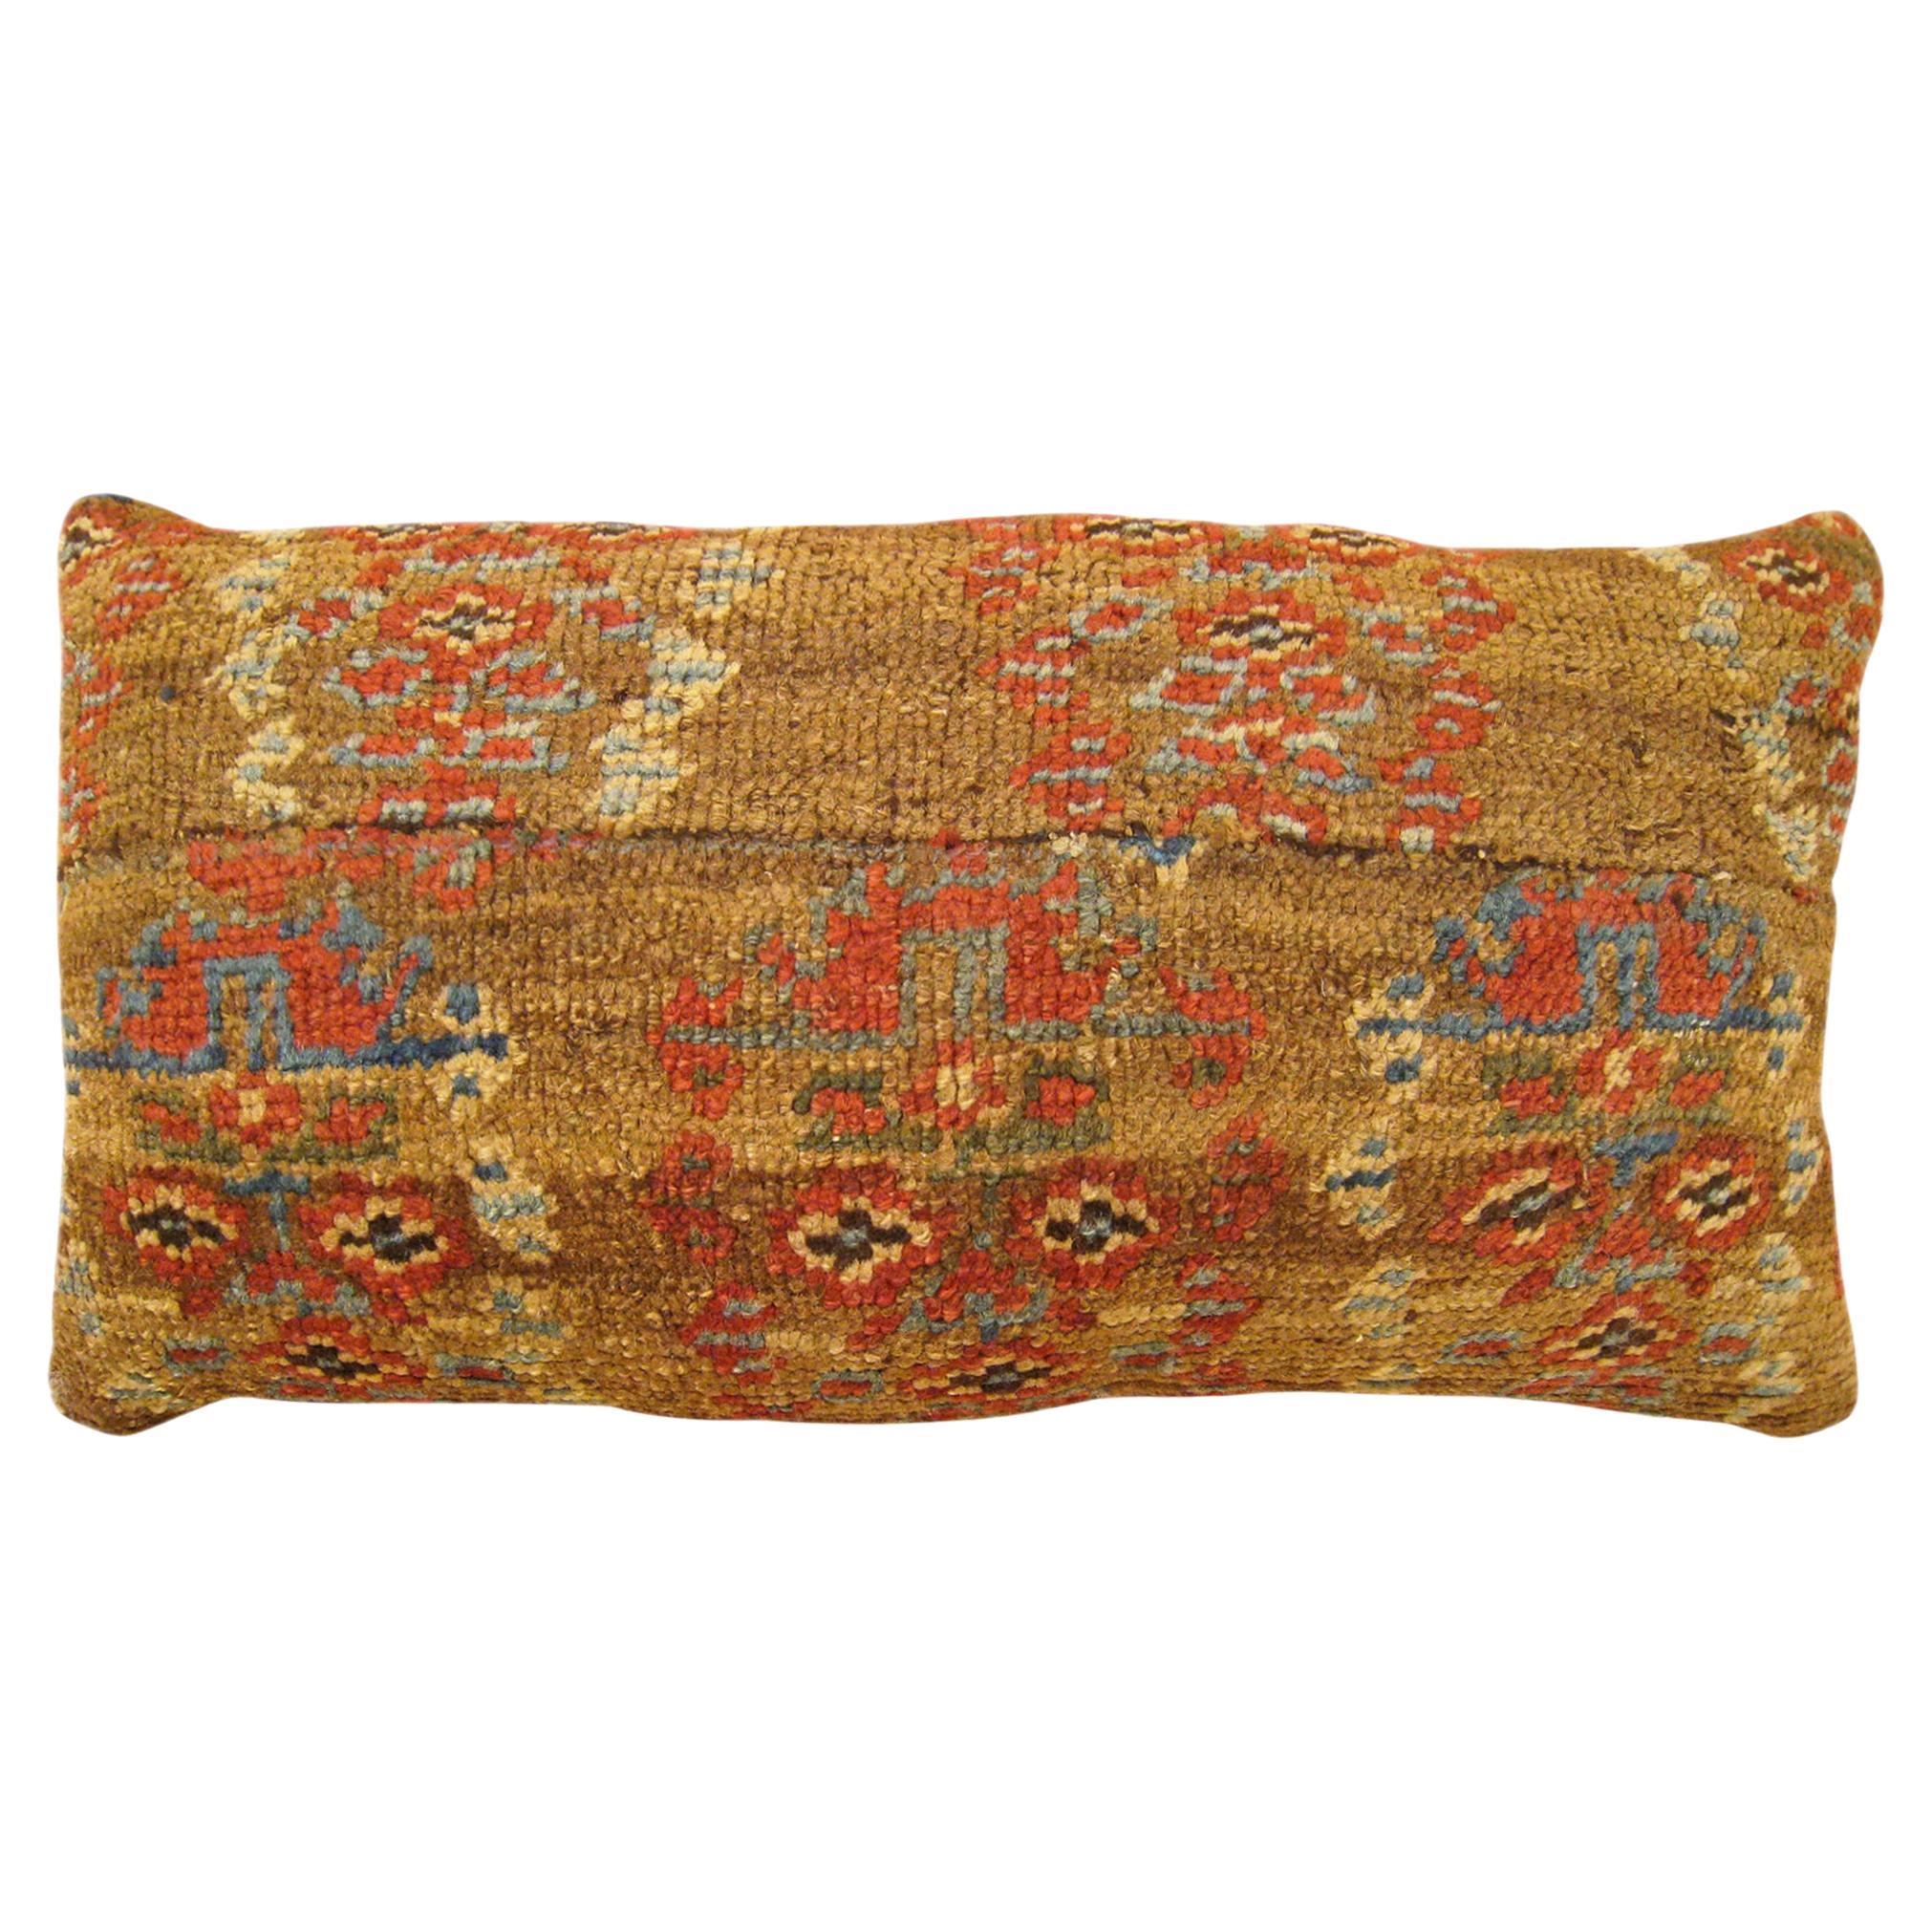 Decorative Antique Persian Bakshaish Carpet Pillow with Floral Elements For Sale